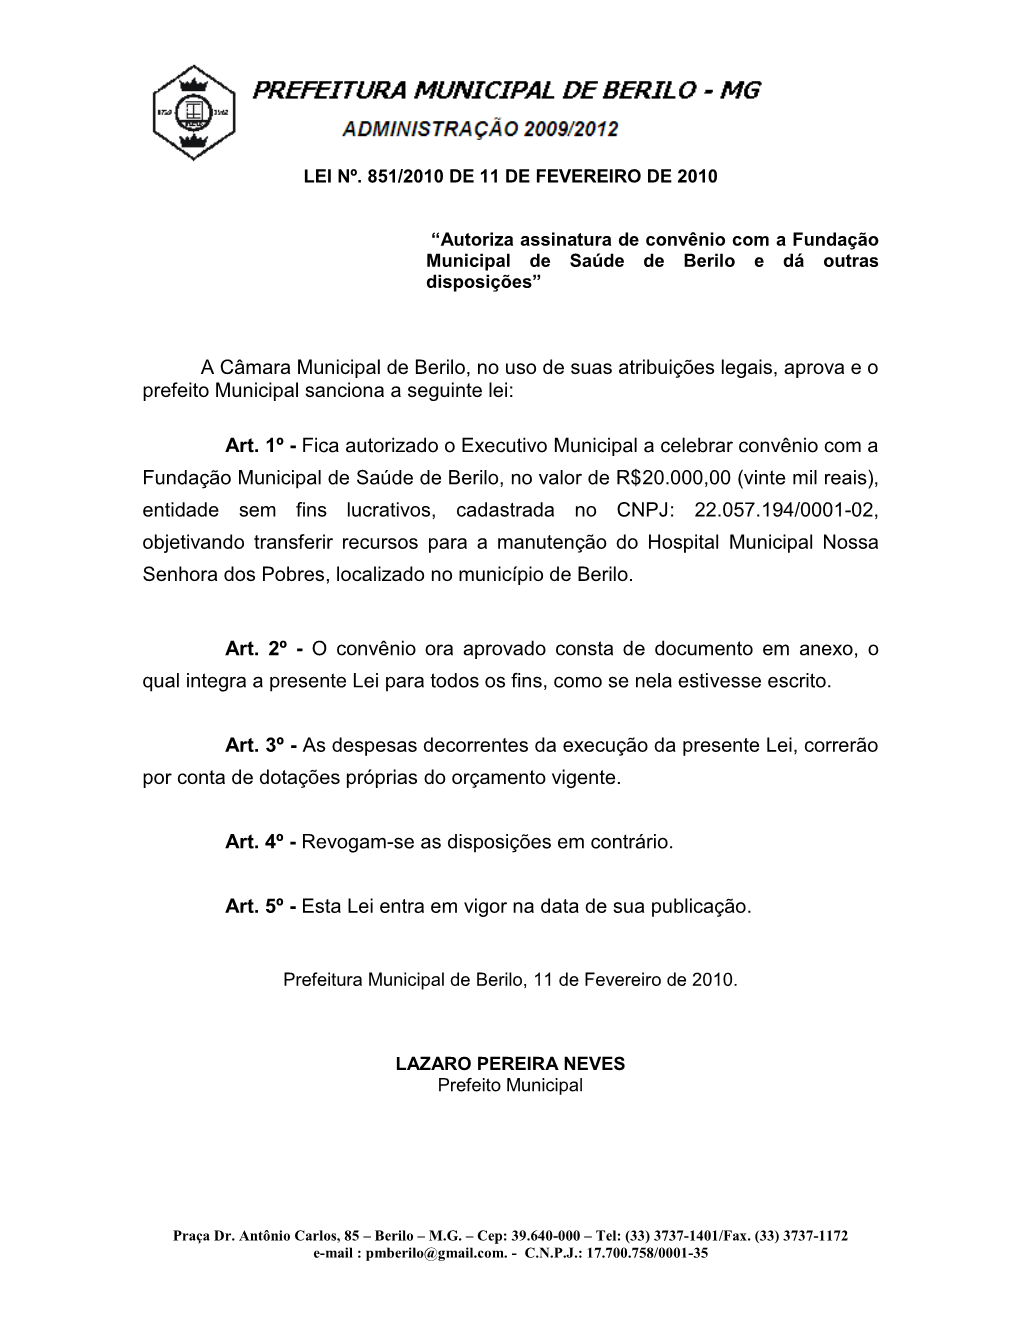 A Câmara Municipal De Berilo, No Uso De Suas Atribuições Legais, Aprova E O Prefeito Municipal Sanciona a Seguinte Lei